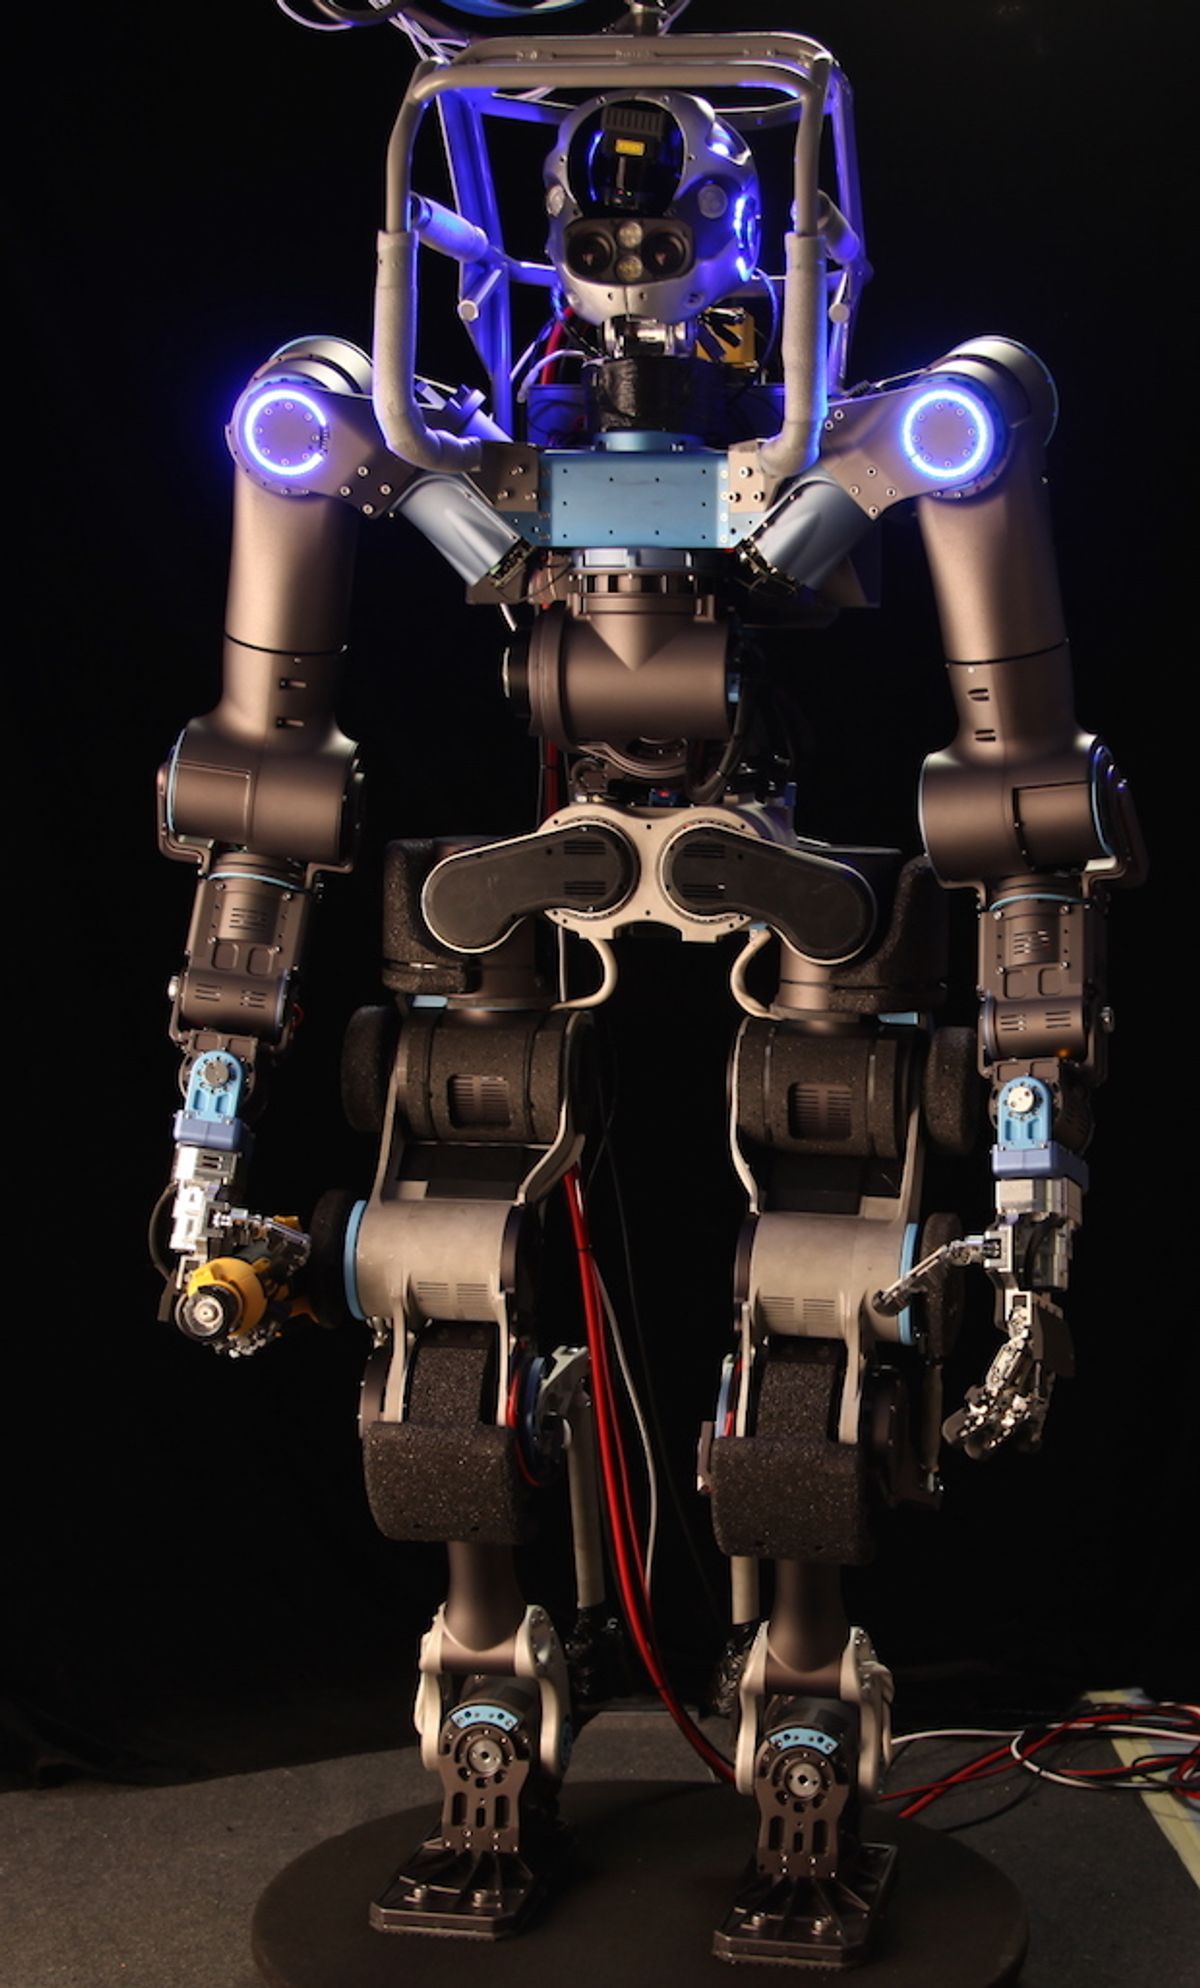 WALK-MAN Team Built Brand New, Highly Custom Robot for DRC Finals